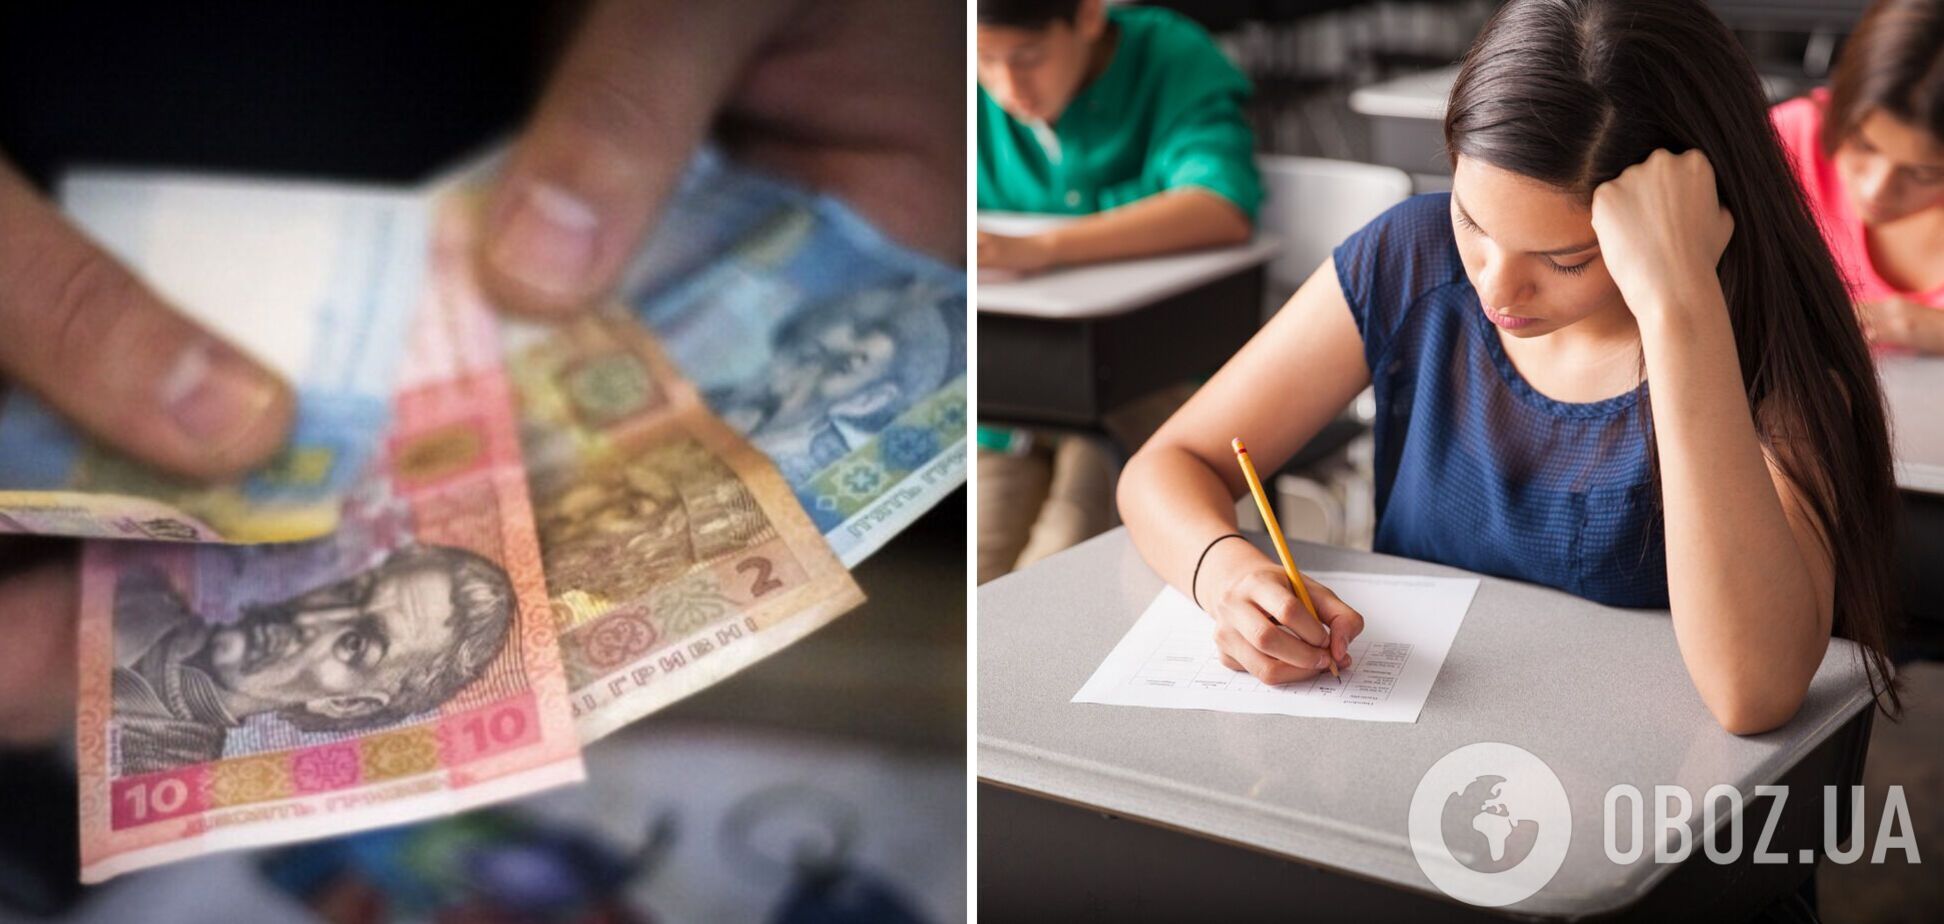 В одном из городов Украины школьникам будут платить деньги за успехи в обучении